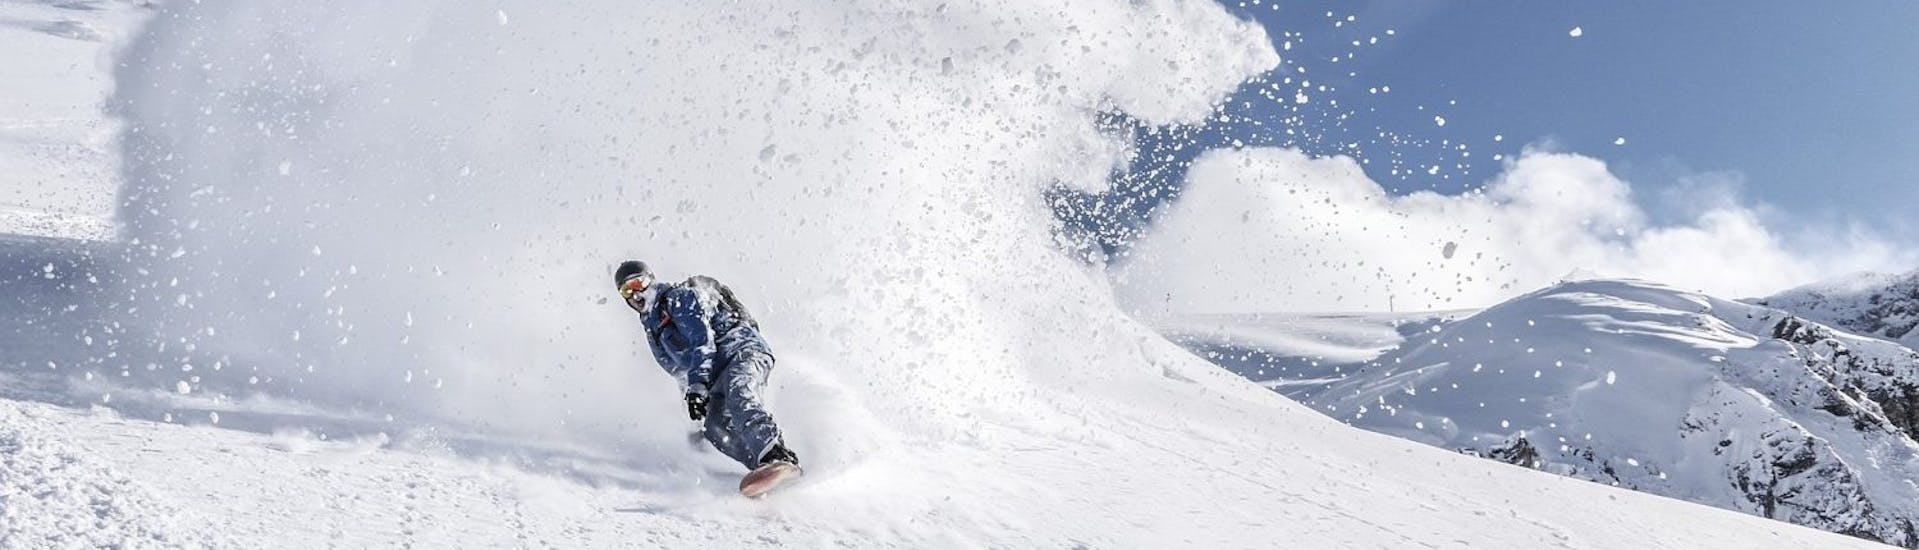 Clases de snowboard privadas a partir de 9 años para todos los niveles.